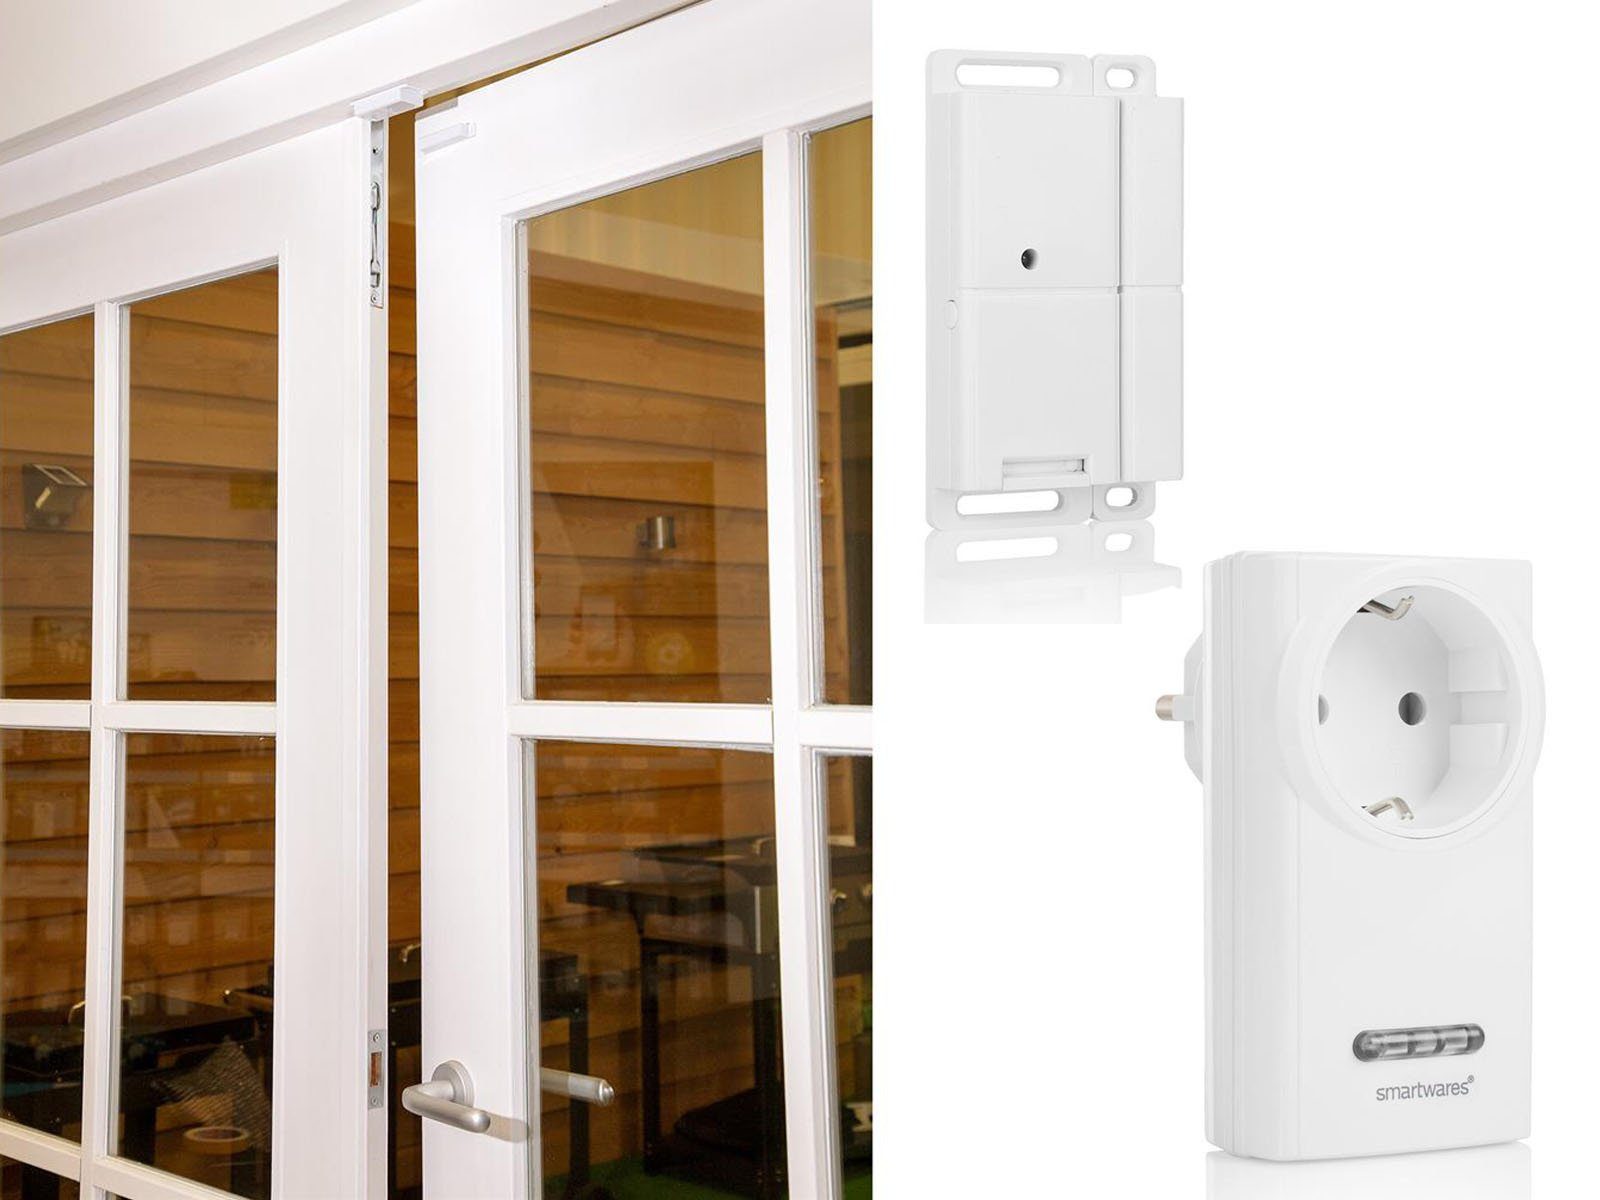 Home, max. 3600 Abluftsteuerung smartwares für Funksteckdose, Fenster-Kontaktschalter Dunstabzugshauben W, mit Smart